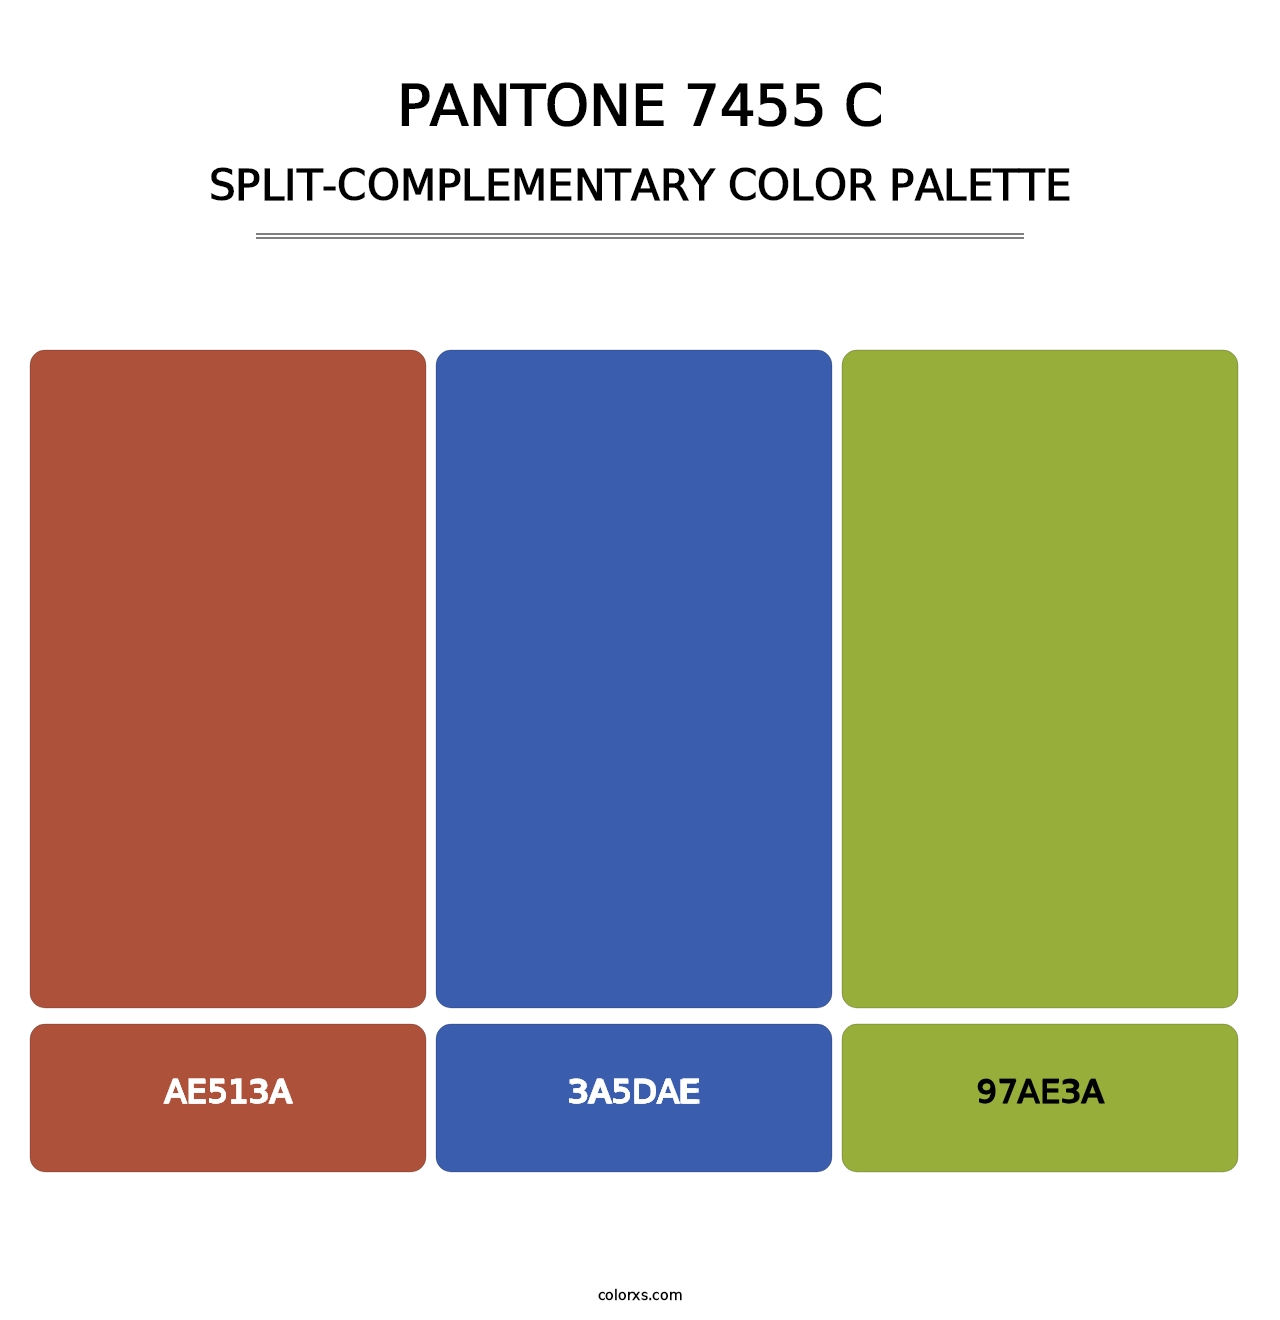 PANTONE 7455 C - Split-Complementary Color Palette